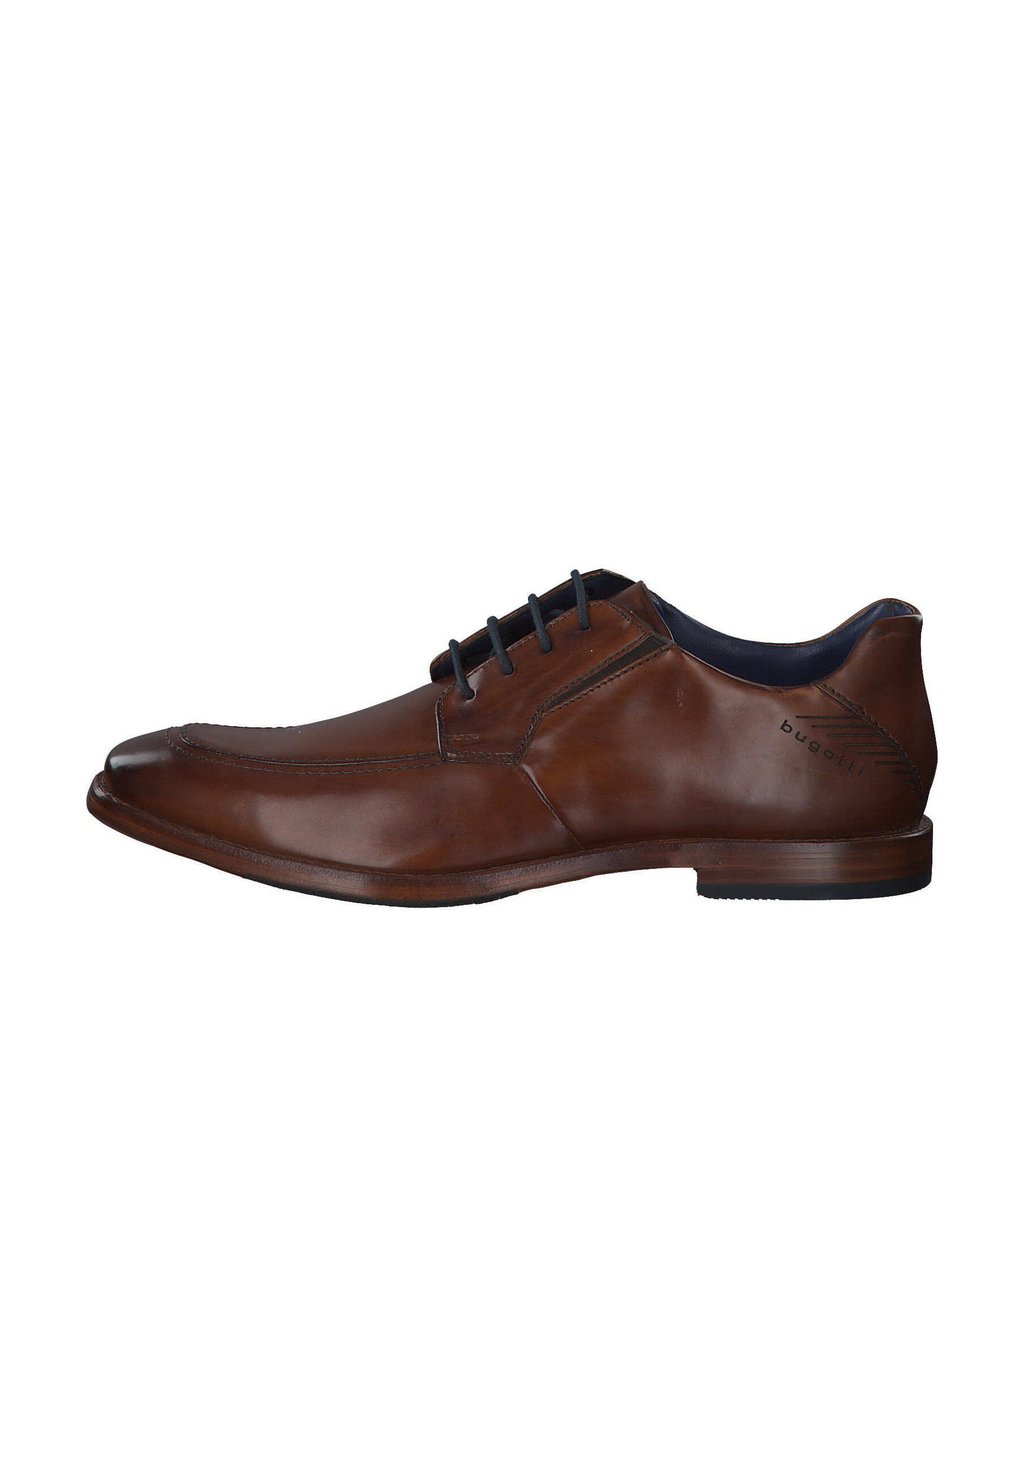 Деловые туфли на шнуровке MANSARO bugatti, цвет cognac спортивные туфли на шнуровке bugatti цвет cognac